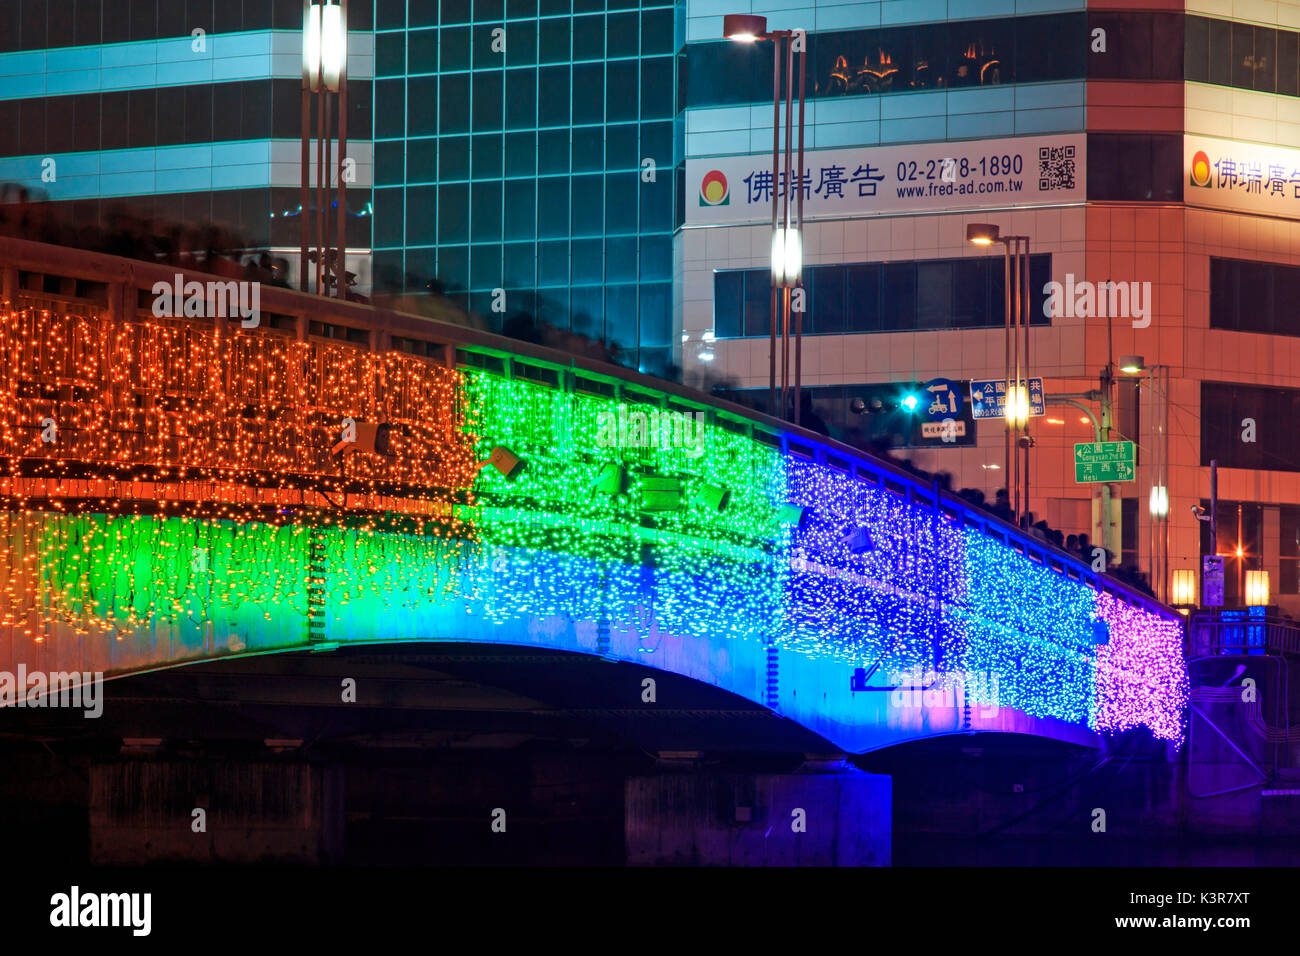 Kaohsiung, Taiwan. Menschen zu Fuß auf die Brücke von der Liebe Fluss von Kaohsiung während der Feiern zum chinesischen Neujahrsfest. Das chinesische Neujahr ist eine wichtige Chinesische Festival feierte an der Wende der chinesischen Kalender. In China ist es auch wie das Frühlingsfest, die wörtliche Übersetzung der modernen chinesischen Namen bekannt. Stockfoto